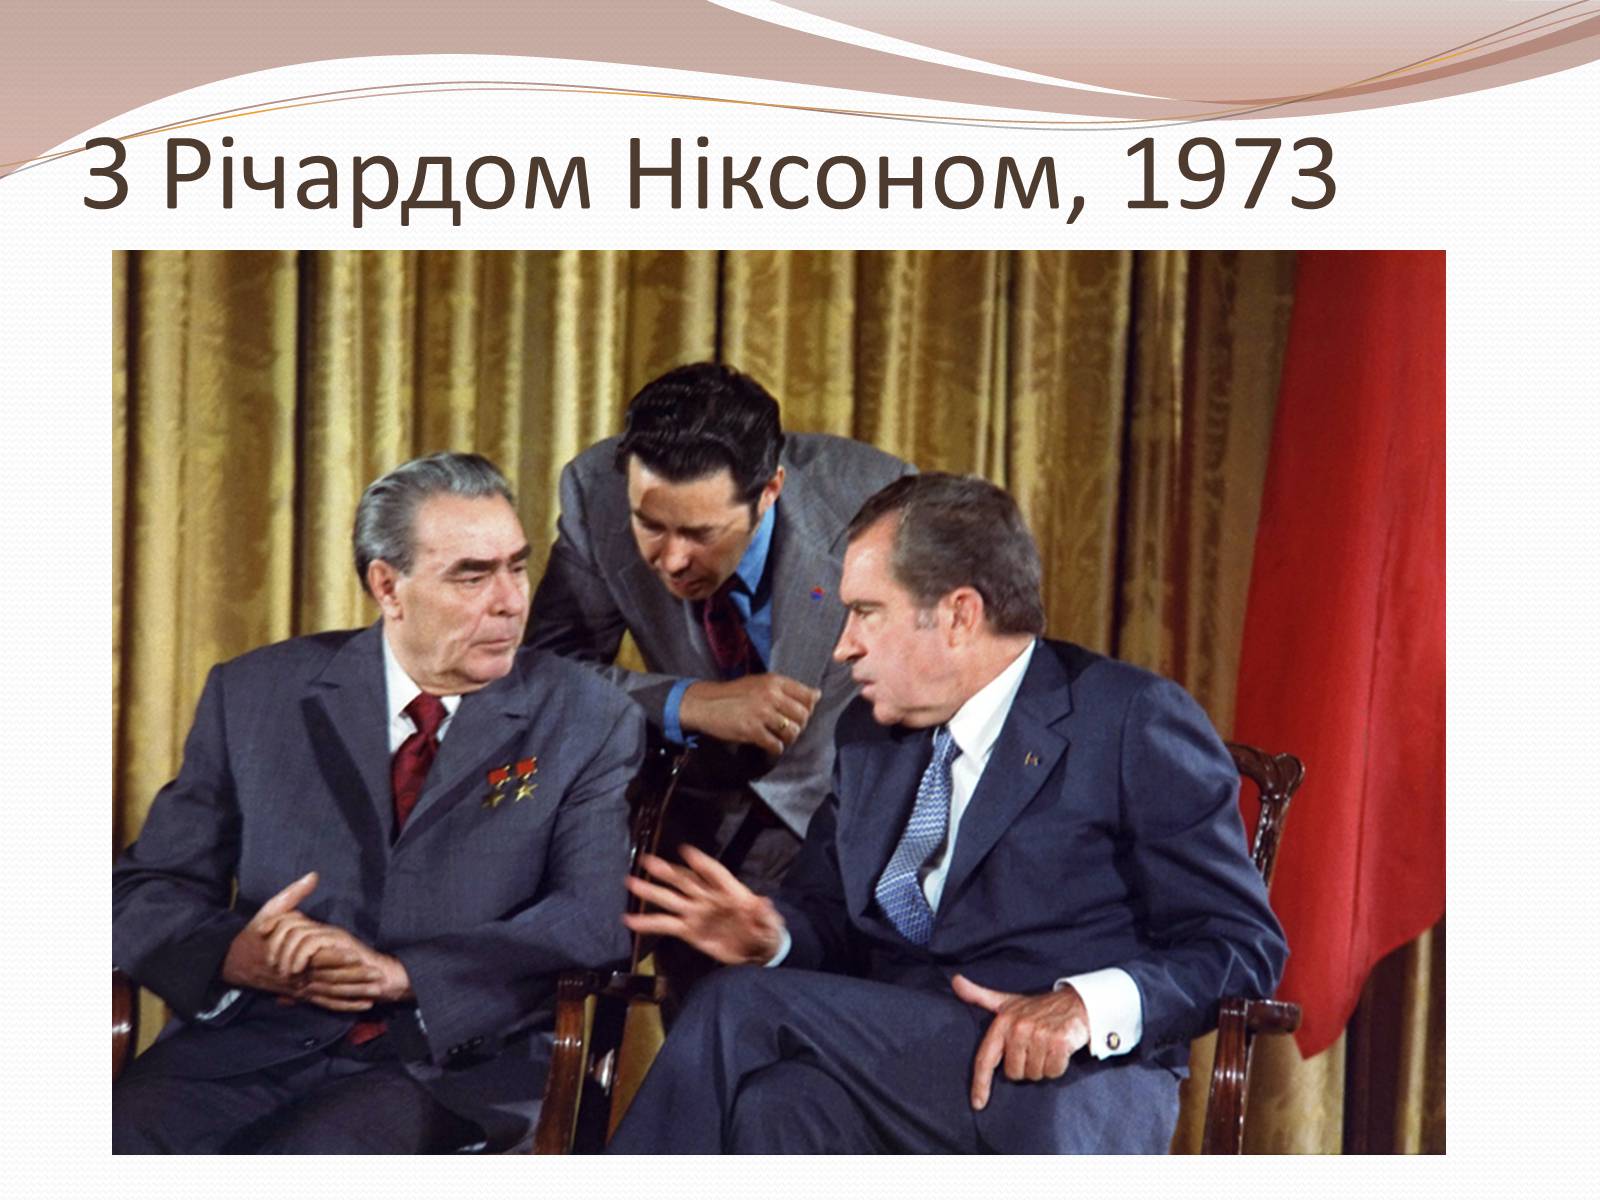 Договор 1972 между ссср и сша. Брежнев и Никсон в 1975. Никсон и Брежнев 1972 г подписали. Встреча Брежнева и Никсона.